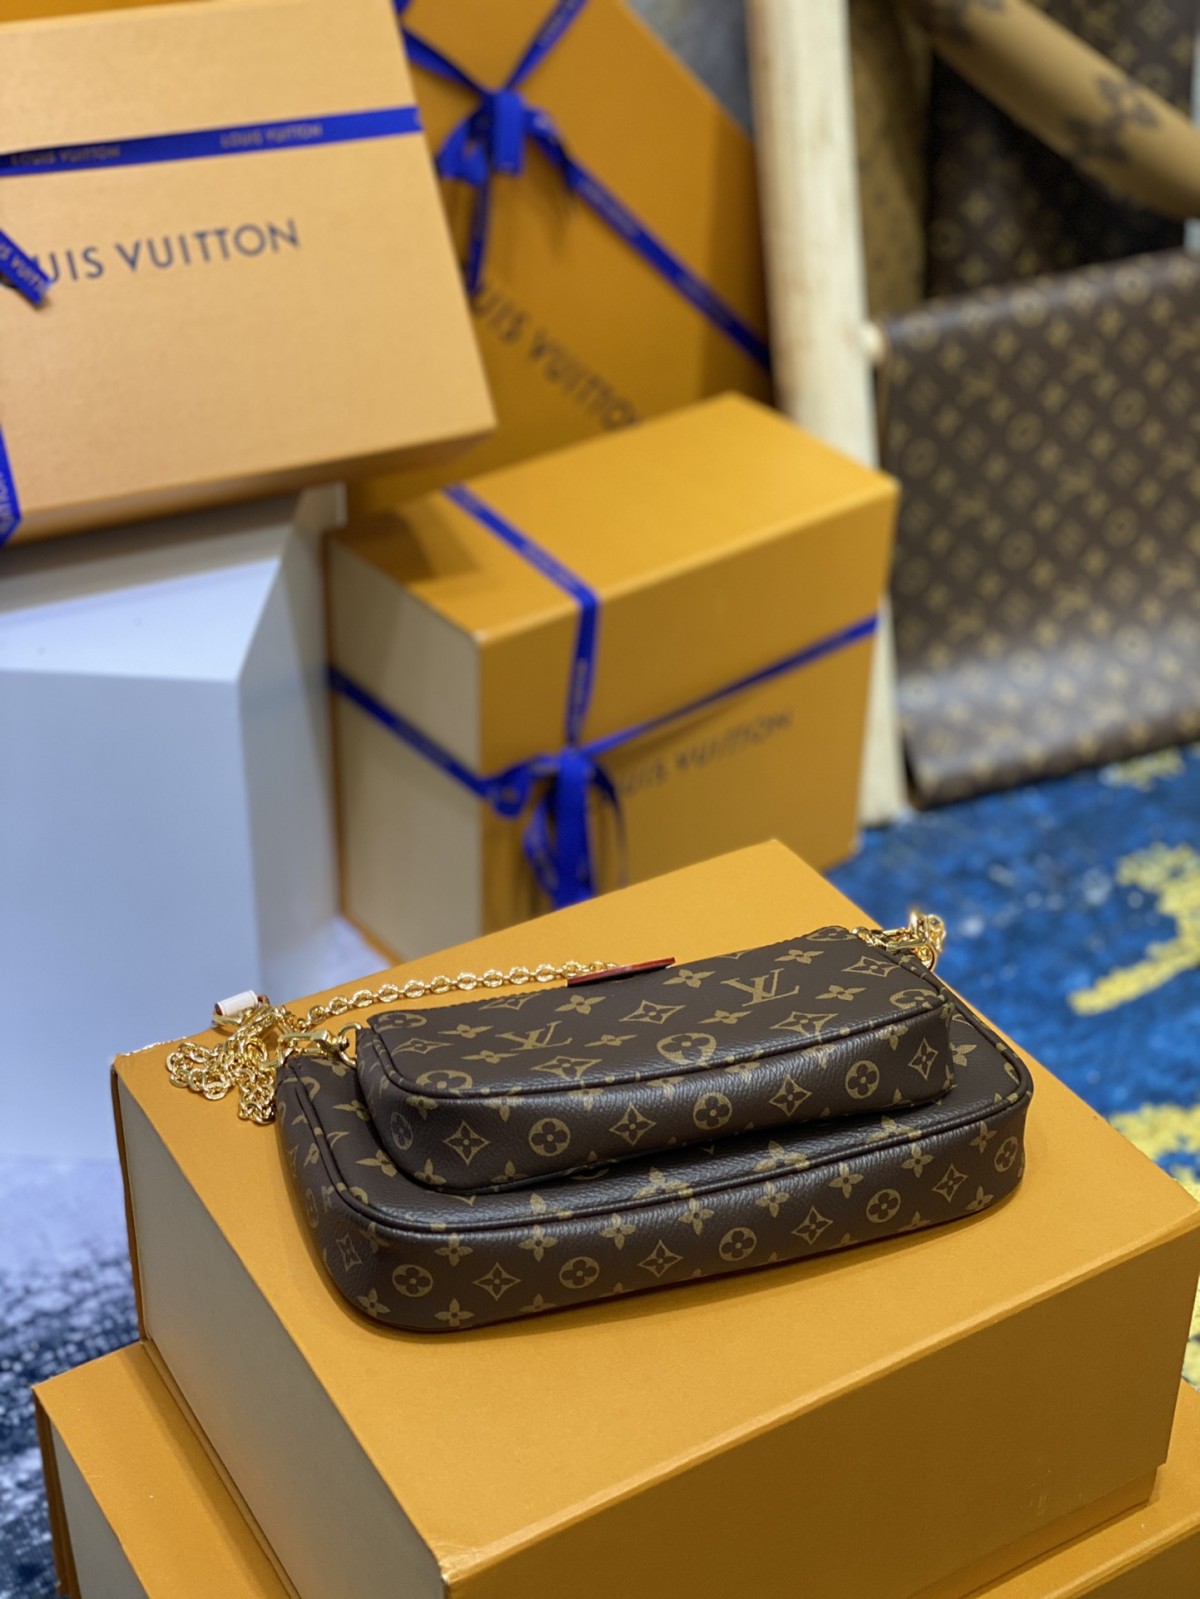 Sideen u iibsan karaa Louis Vuitton suunka suunka nuqul online?(2022 ugu dambeeyay) -Tayada ugu fiican